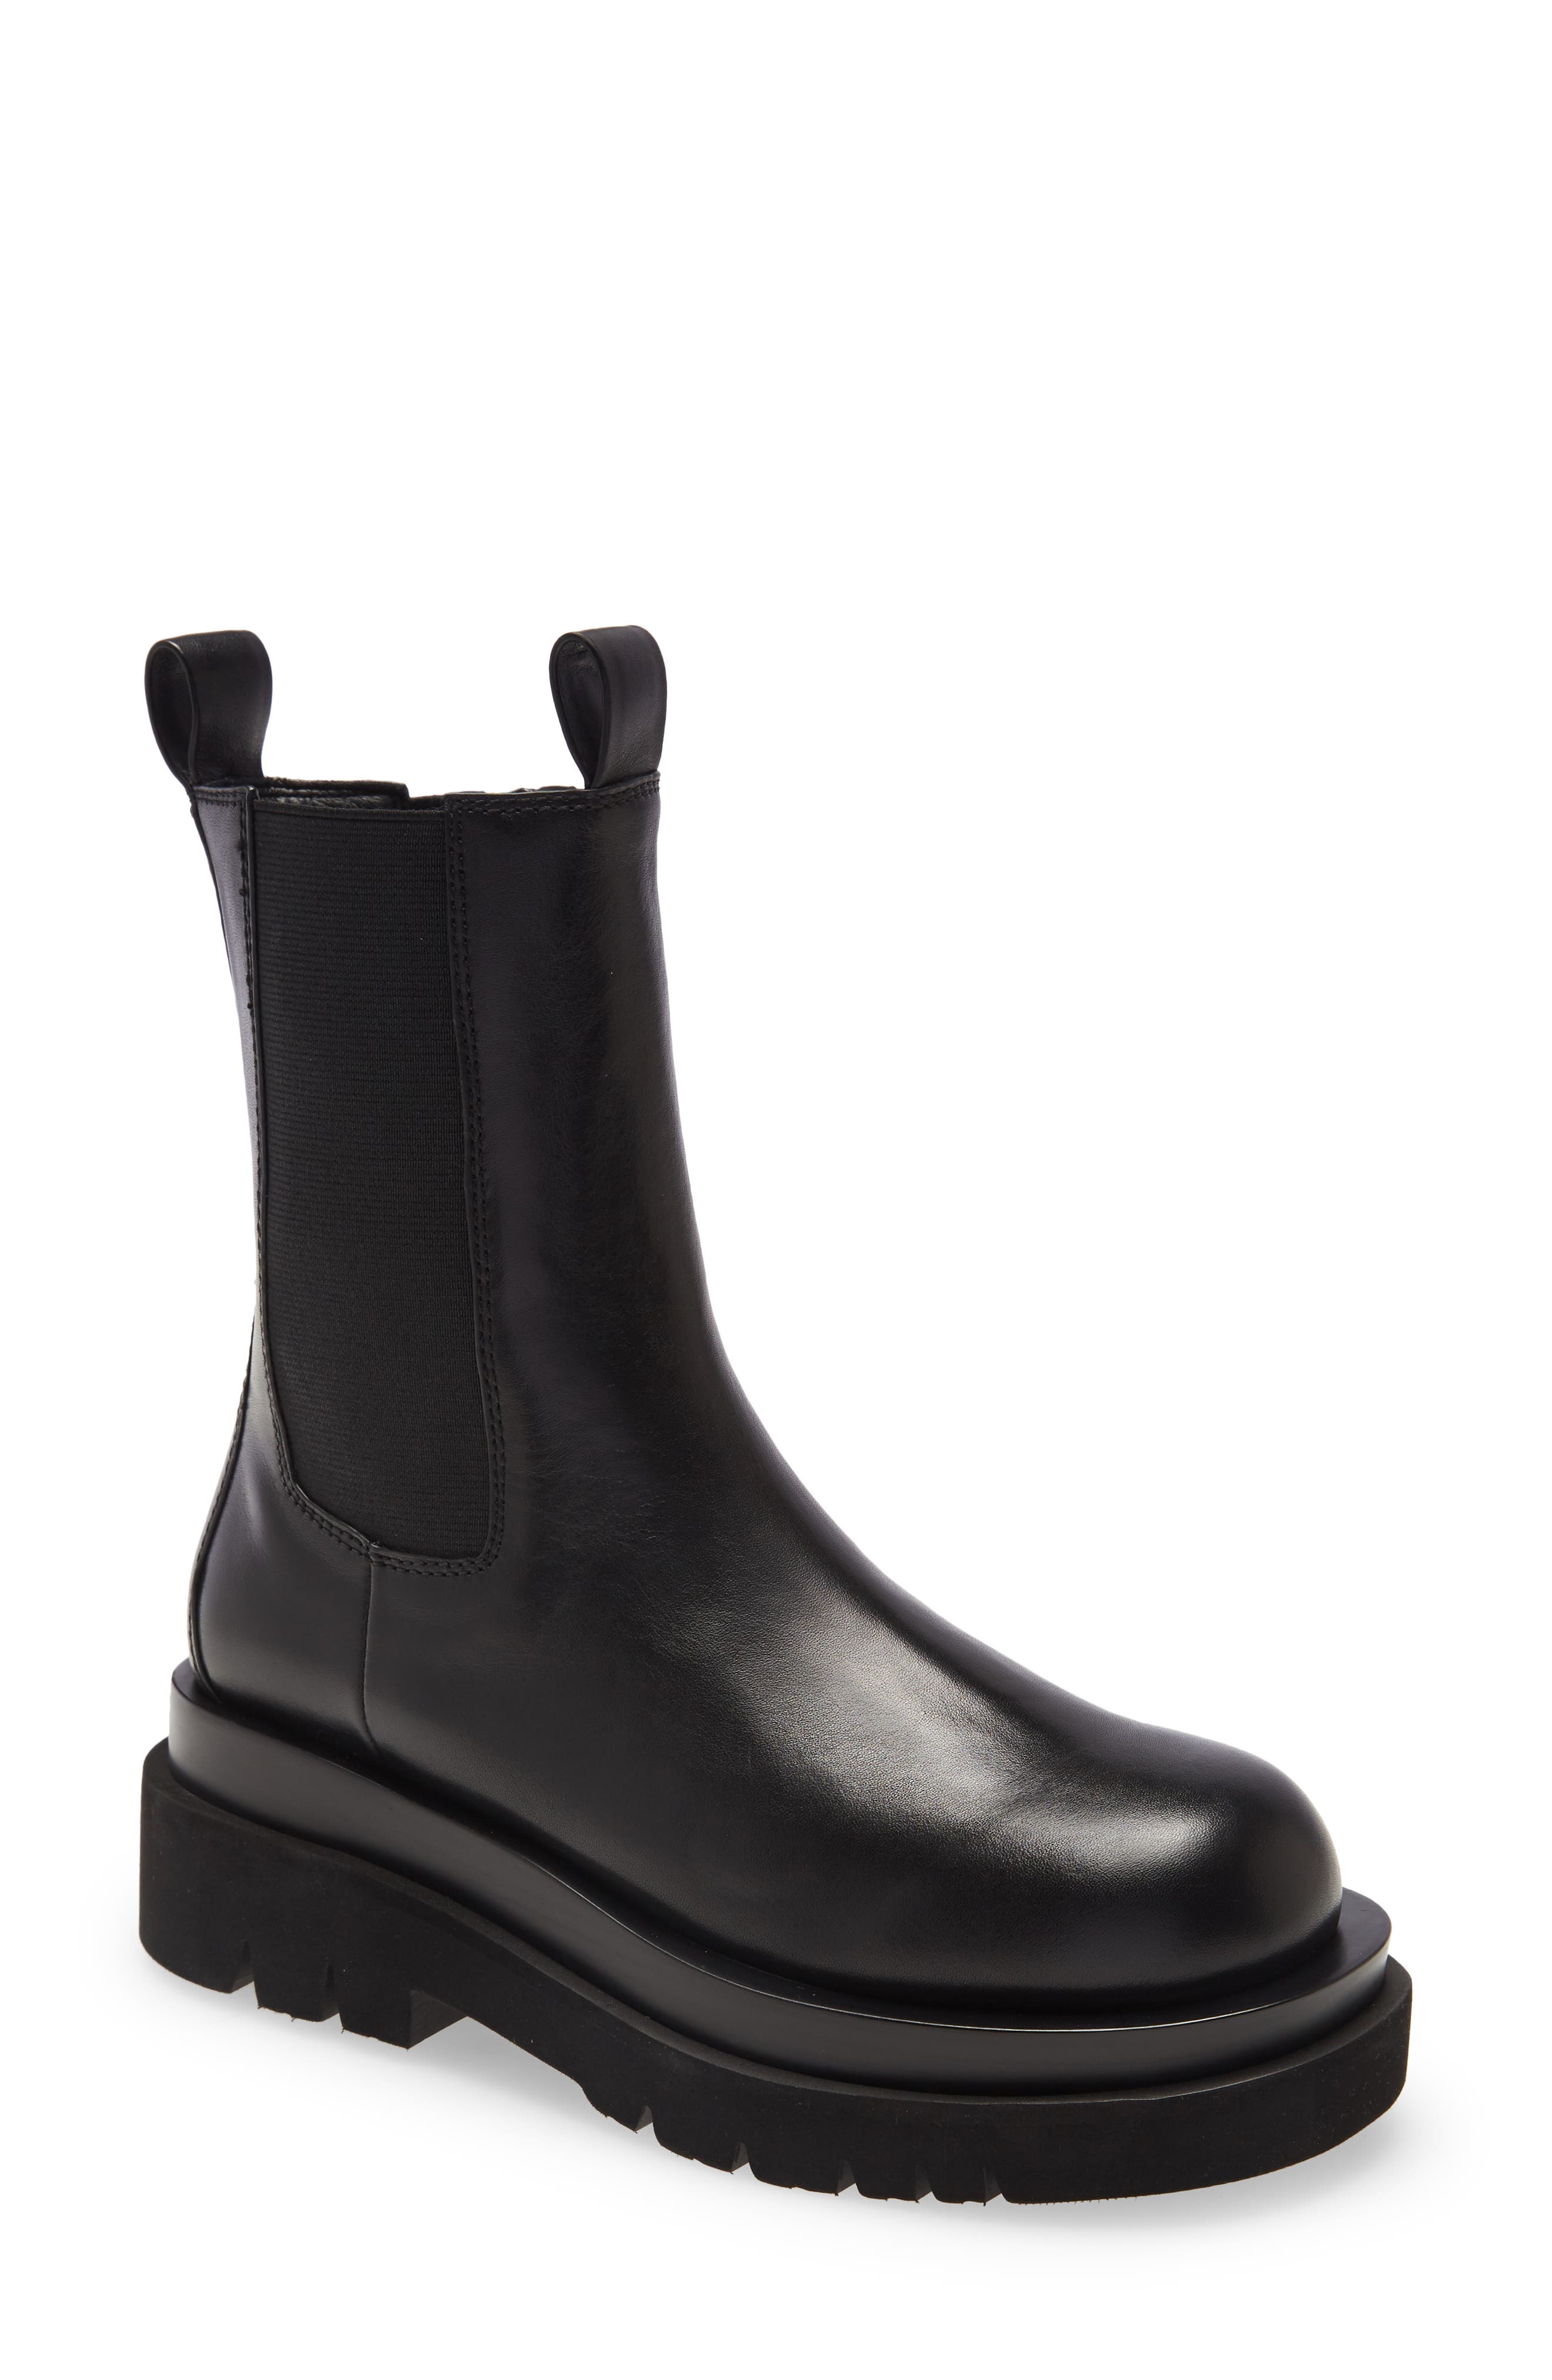 wide calf boot brands 272124 1688059888934